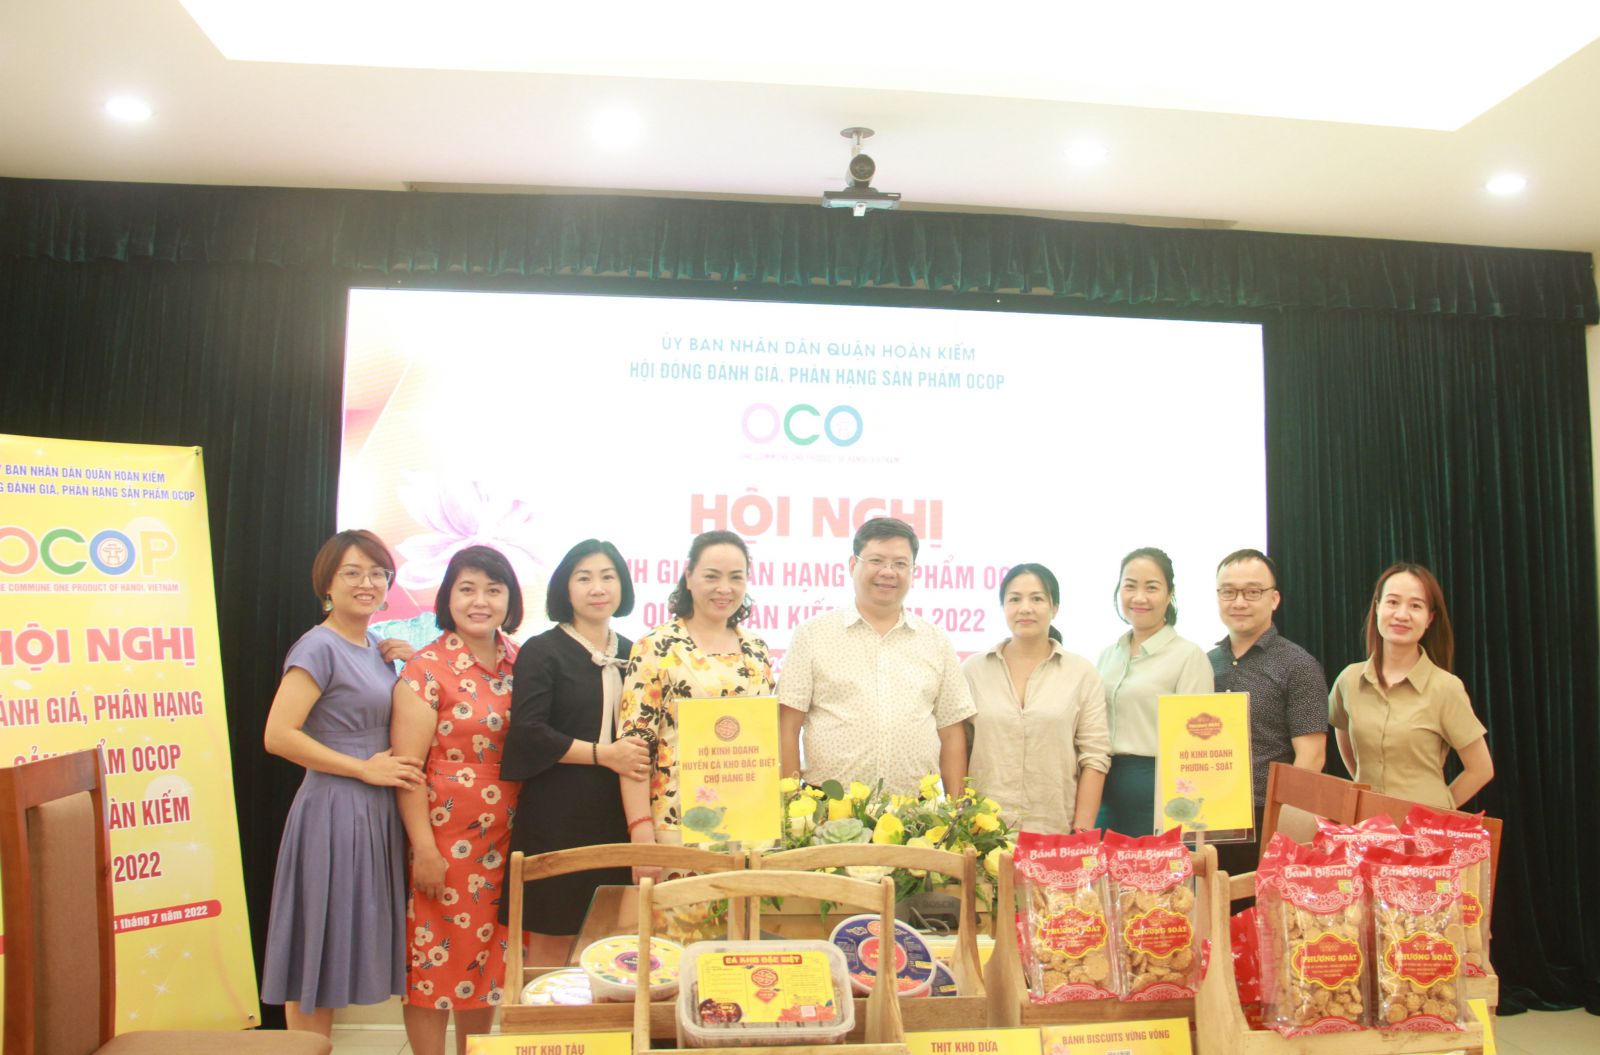 Hội đồng thẩm định chụp ảnh lưu niệm cùng các chủ thể có sản phẩm được đánh giá, phân hạng OCOP quận Hoàn Kiếm